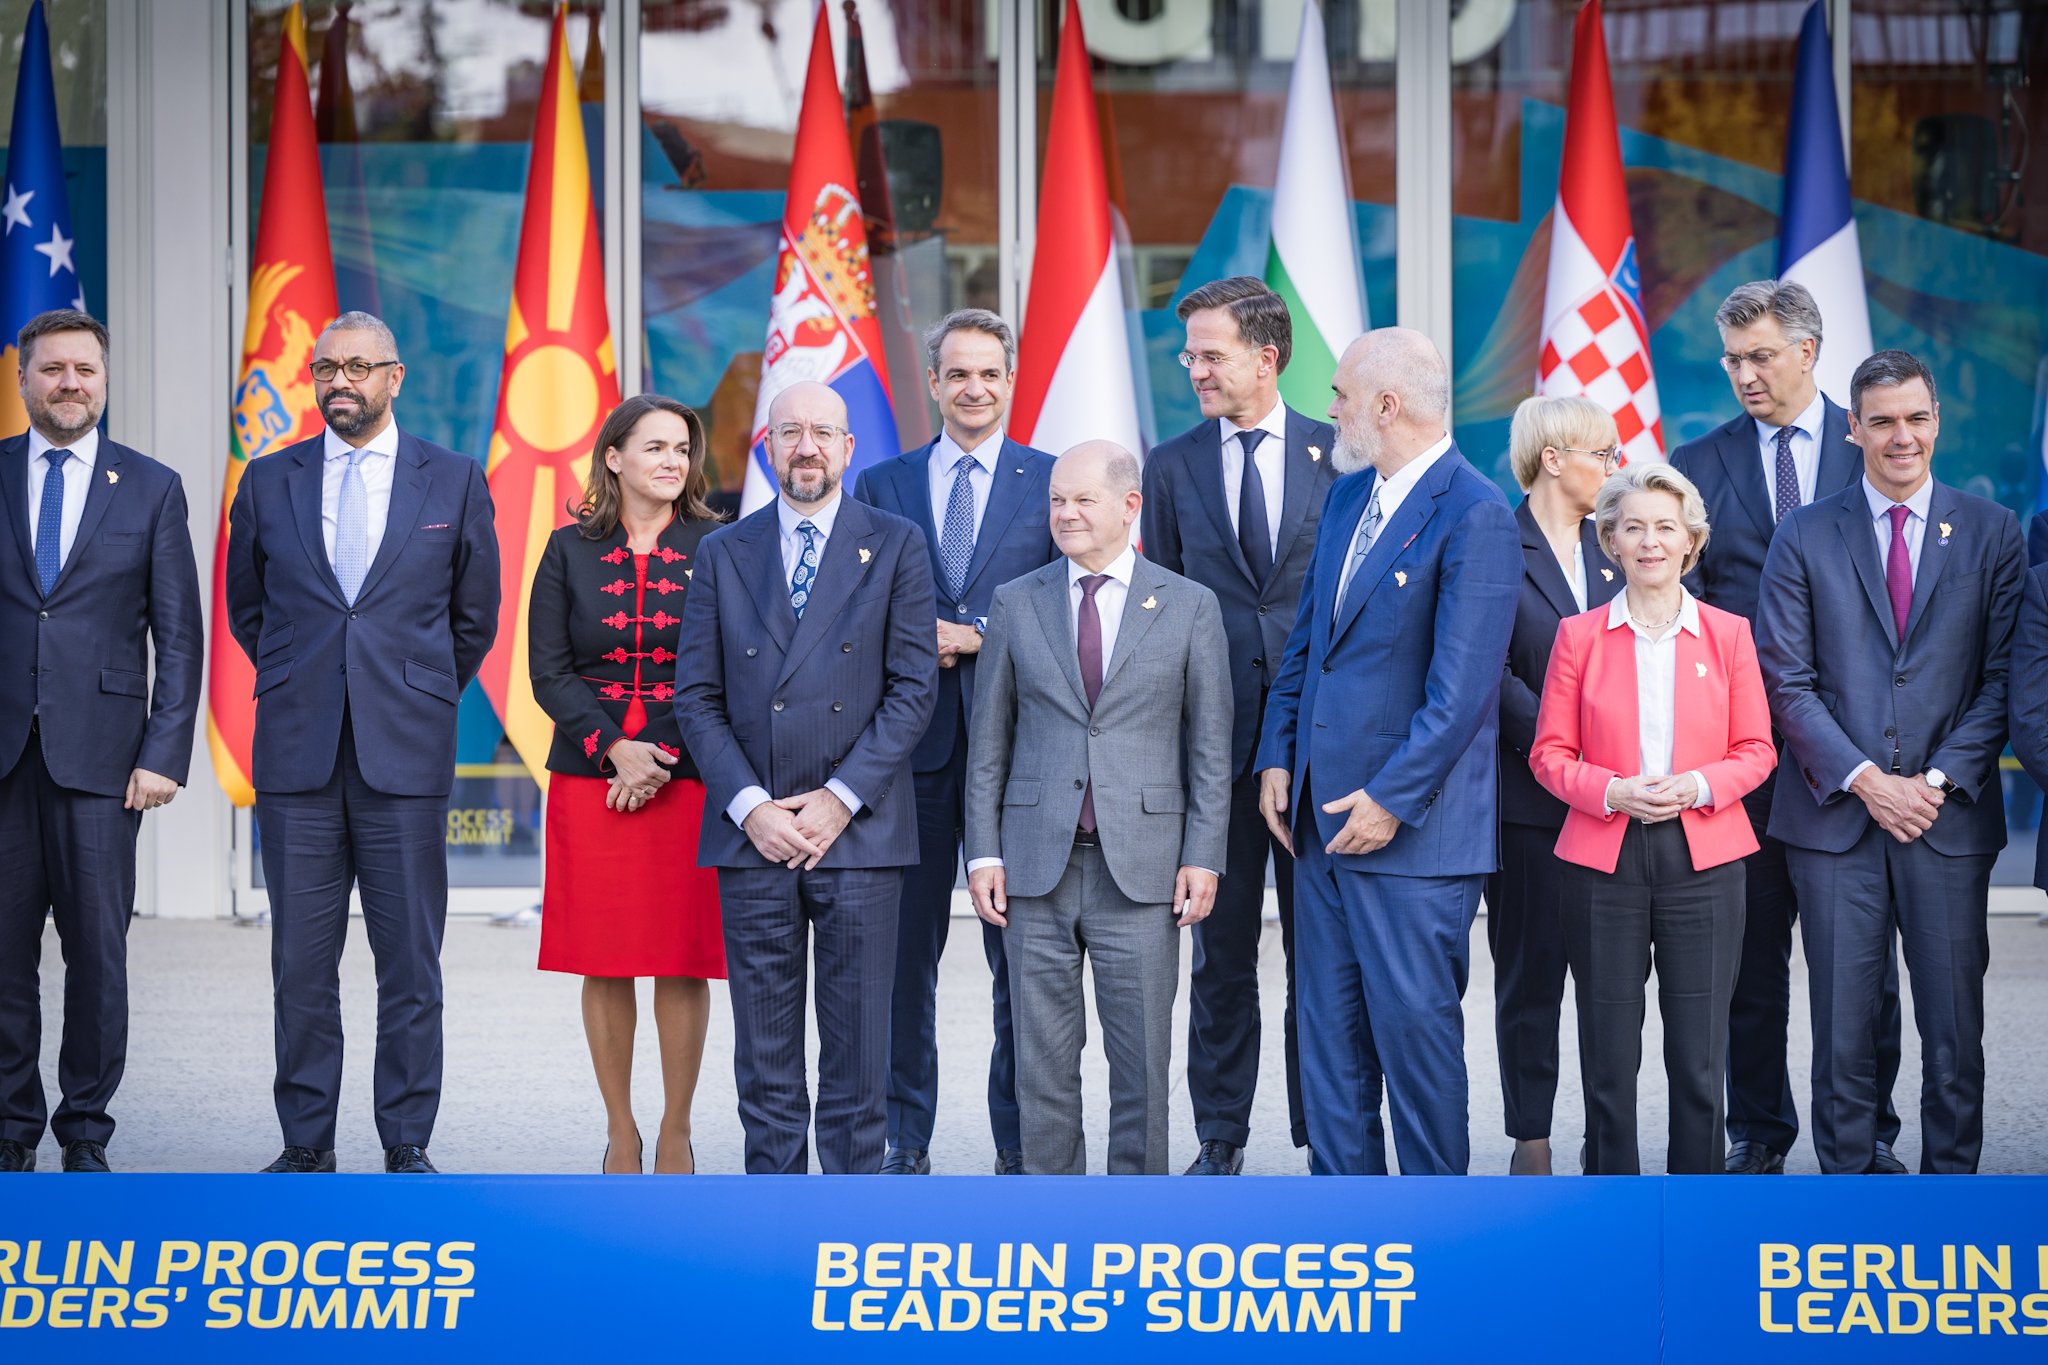 На самиту Берлинског процеса, лидери земаља Западног Балкана разговарали о регионалној сарадњи и европским интеграцијама